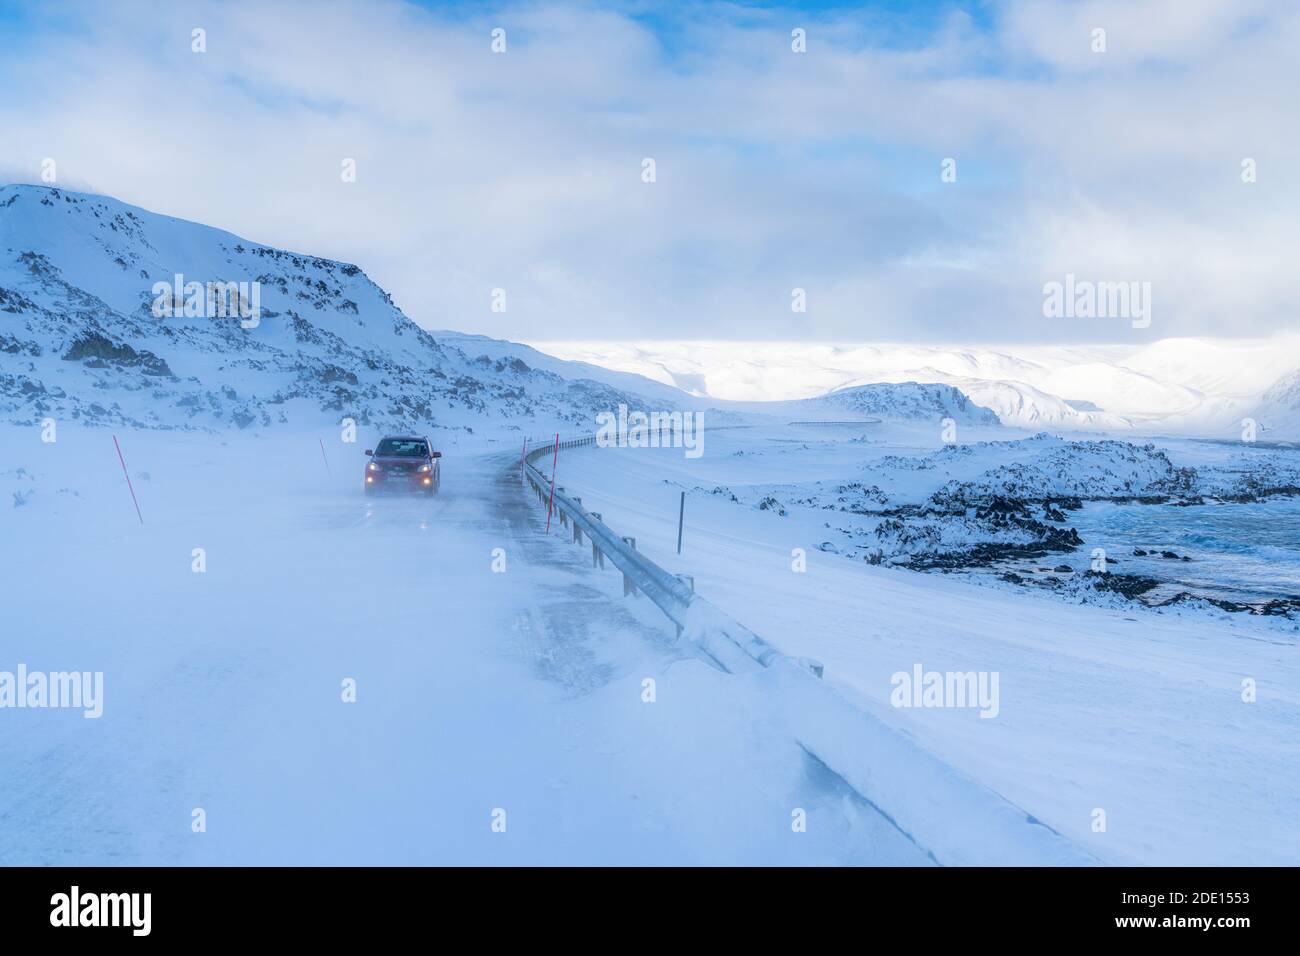 Auto che viaggia su una strada ghiacciata vuota lungo la costa nevosa del freddo Barents Sea, Arctic Ocean, Varanger Peninsula, Finnmark, Norvegia, Scandinavia, Europa Foto Stock